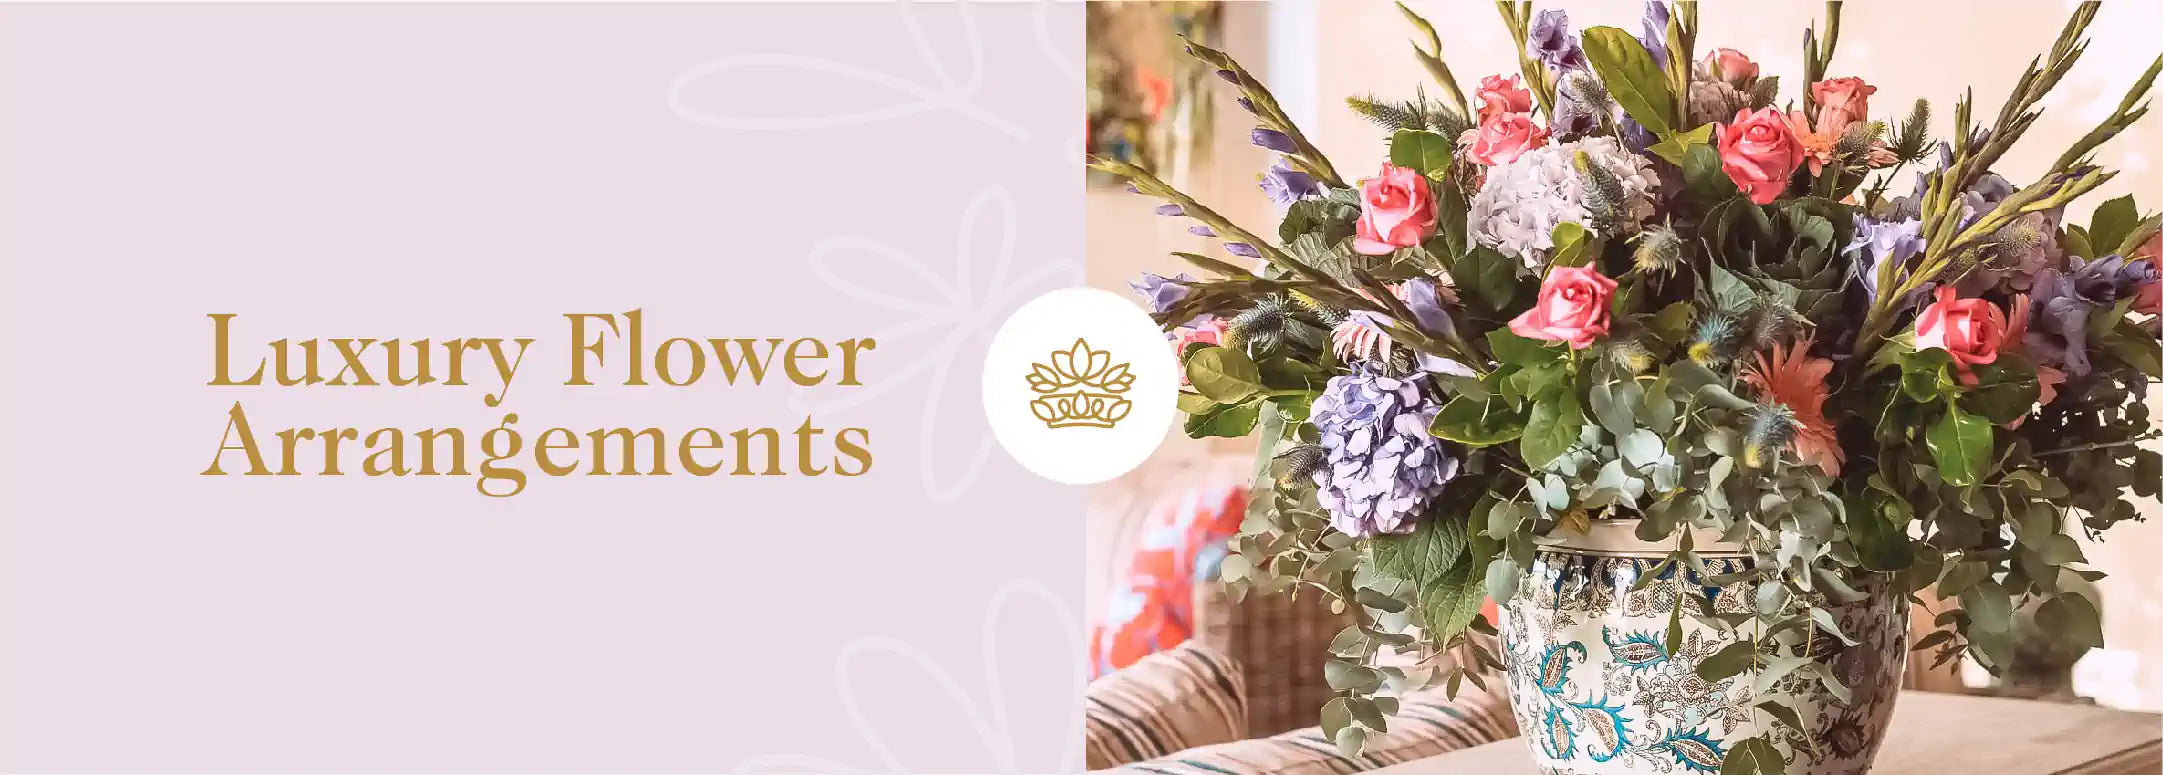 An elaborate flower arrangement in a decorative vase, epitomising 'Luxury Flower Arrangements'. Fabulous Flowers and Gifts - Luxury Flower Arrangements